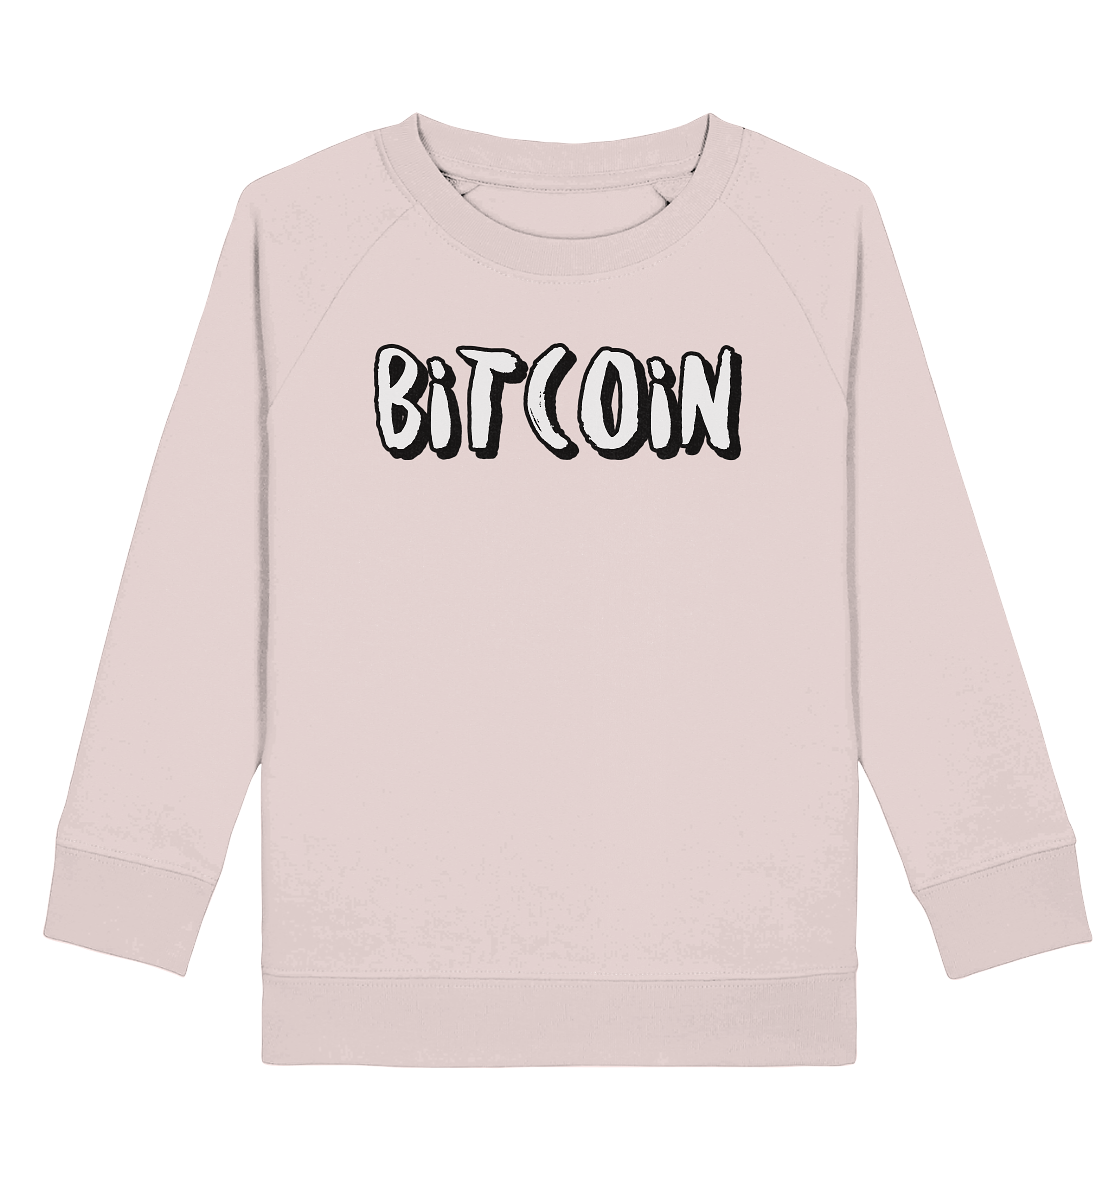 Bitcoin "typo 1"  - Kids Organic Sweatshirt